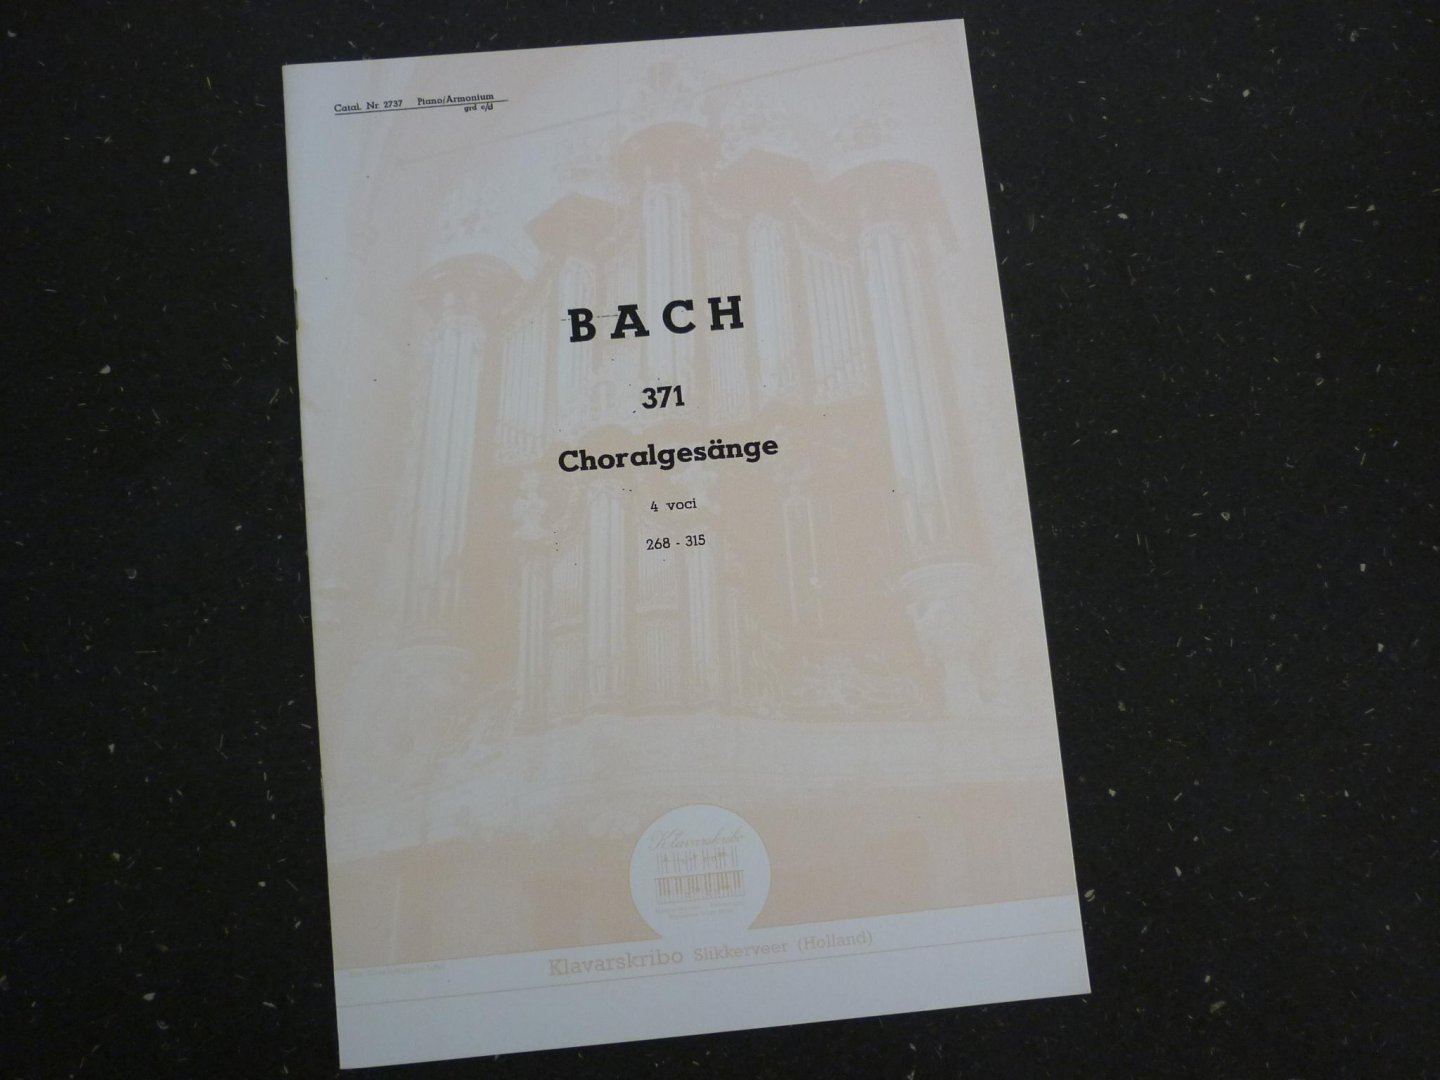 Bach - Choralgesange / 4 voci / 268 - 315 - Klavarskribo